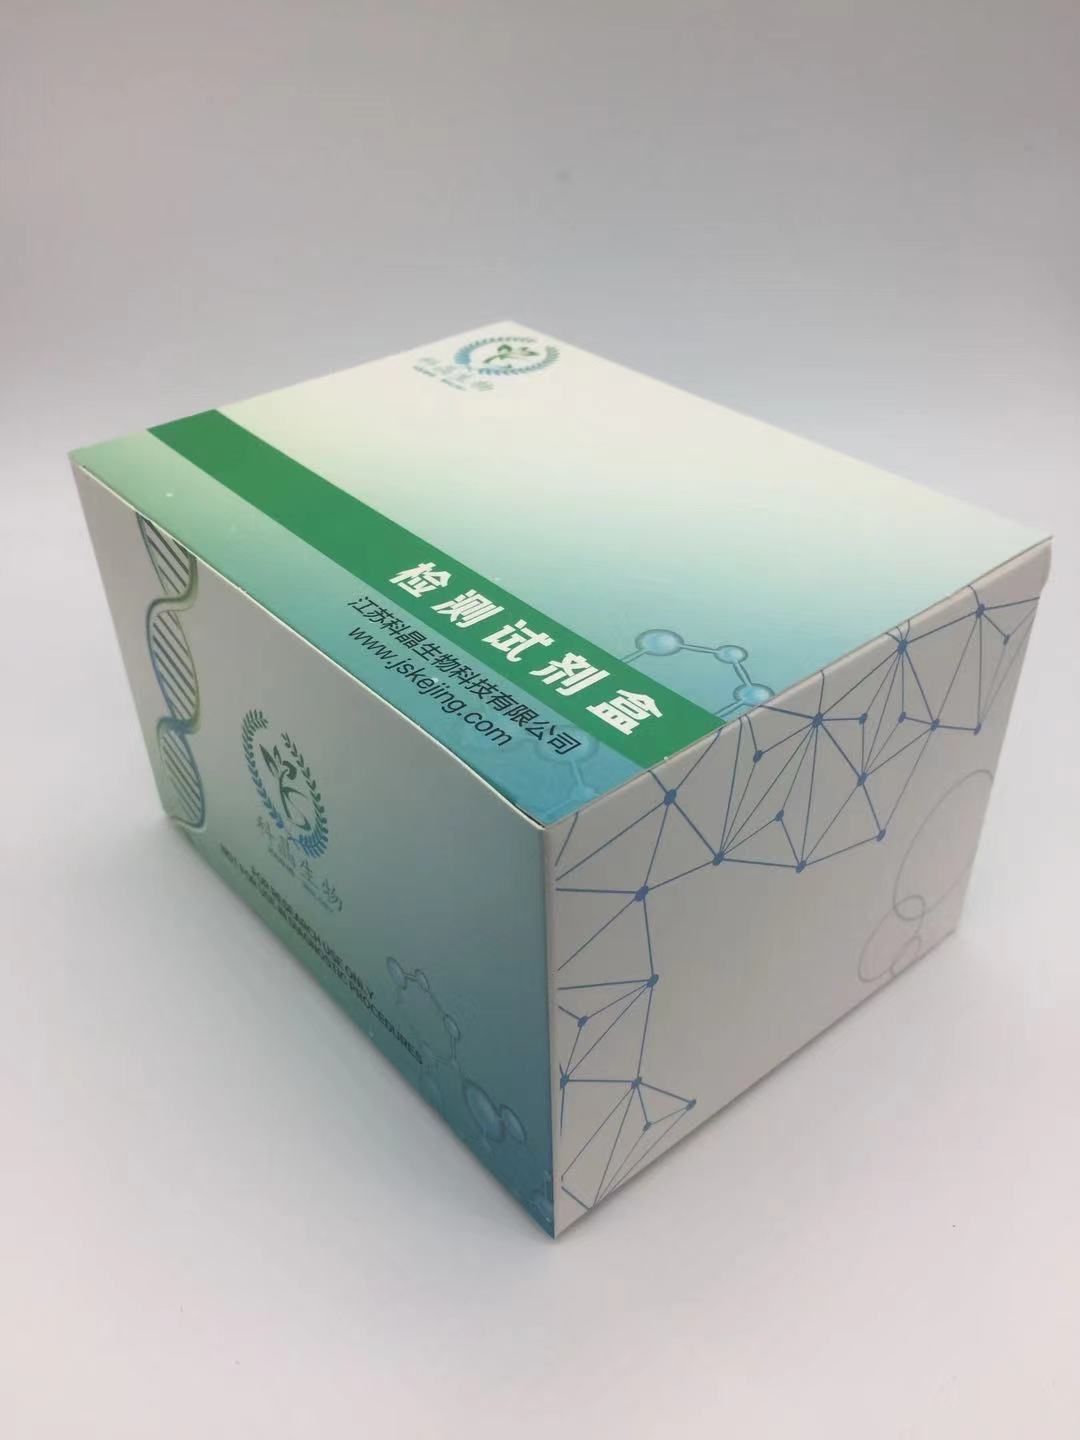 大鼠网膜素(omentin)ELISA试剂盒